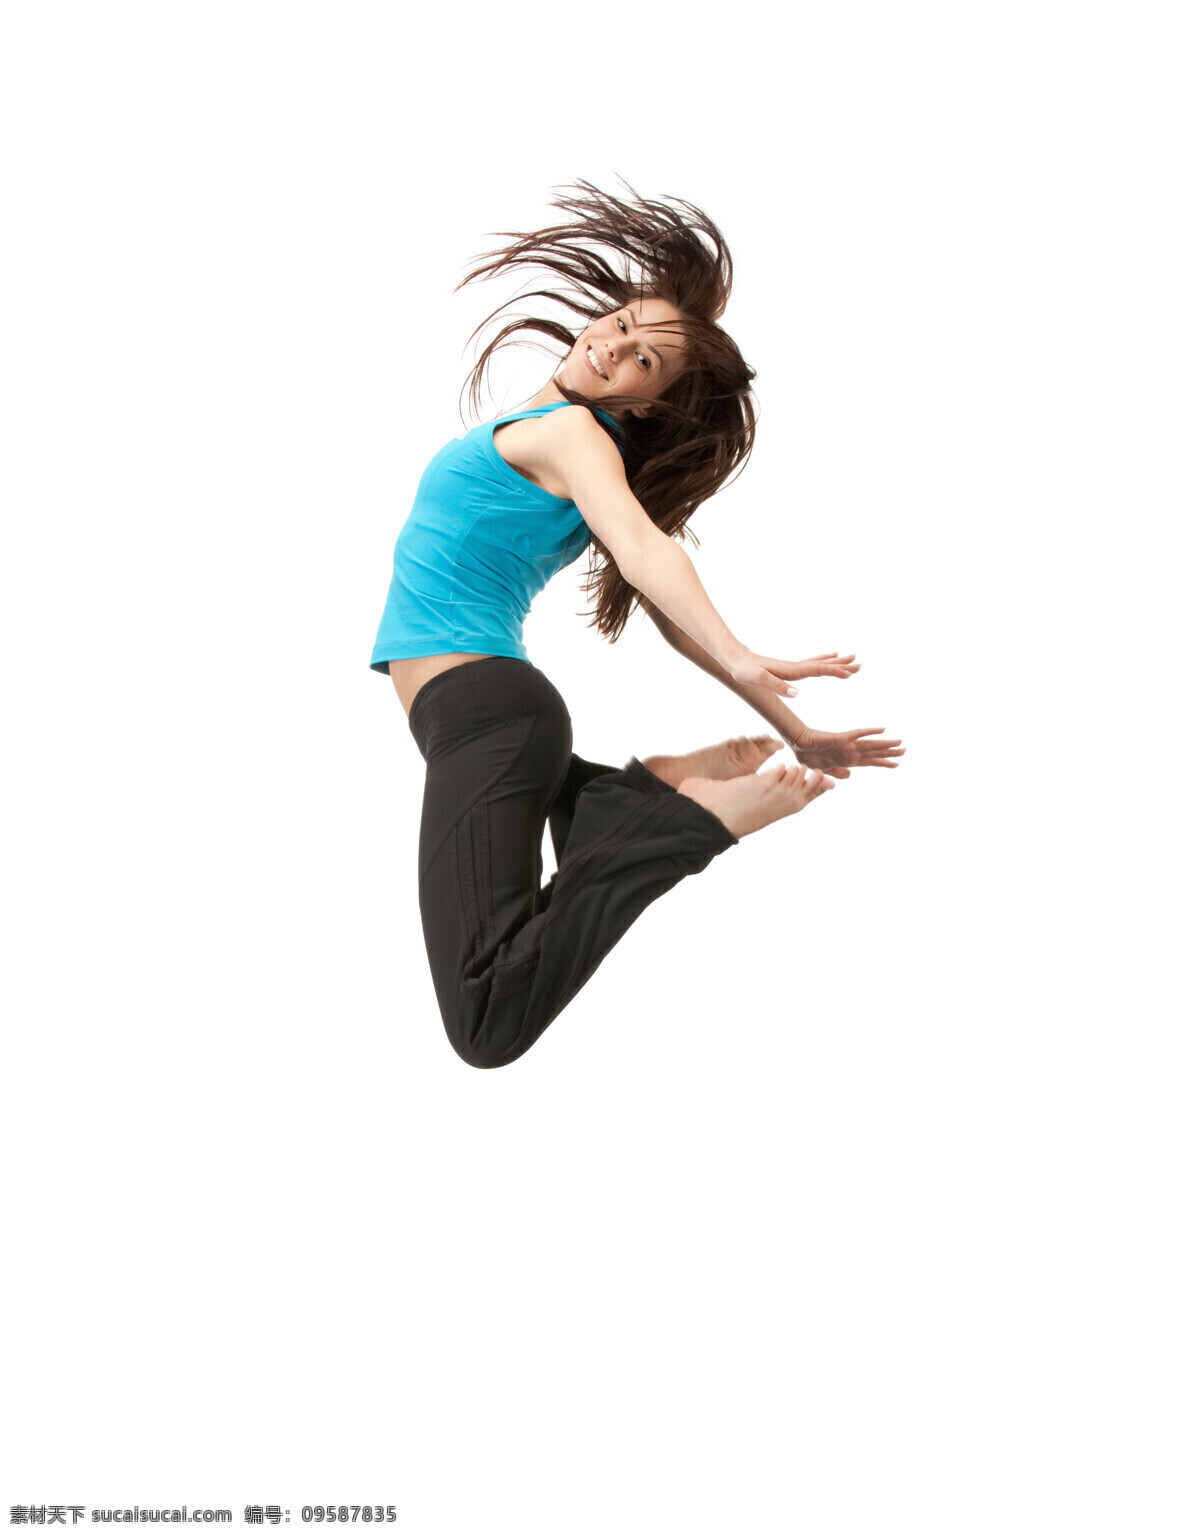 练 瑜珈 美女图片 外国女性 女人 时尚美女 性感美女 瘦身美女 健康女性 健身 跳跃 人物图片